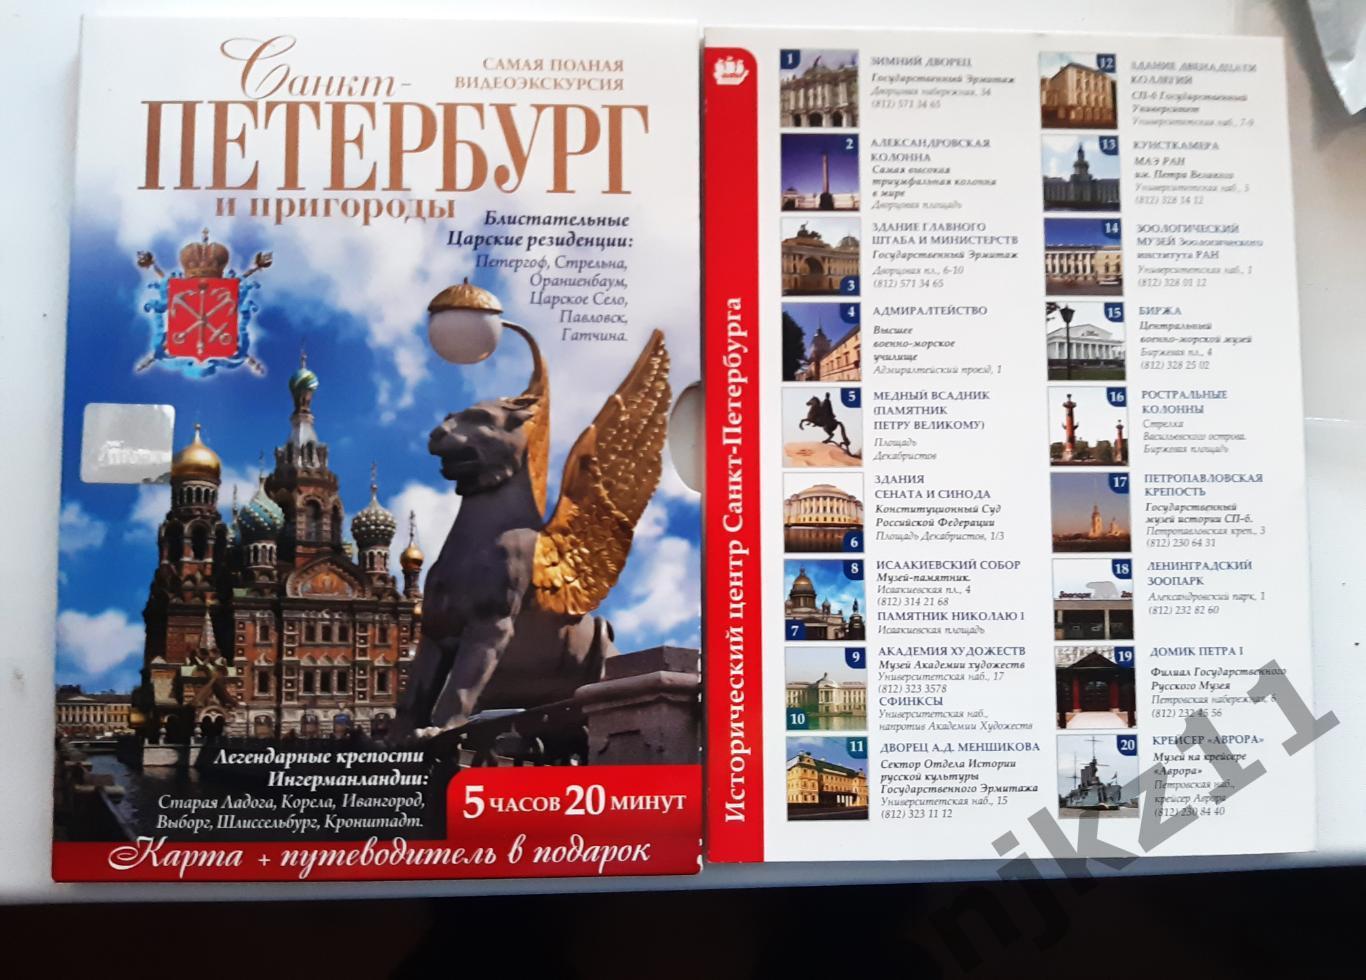 Санкт-Петербург и пригороды DVD фильм на 5 часов+карта путеводитель 2